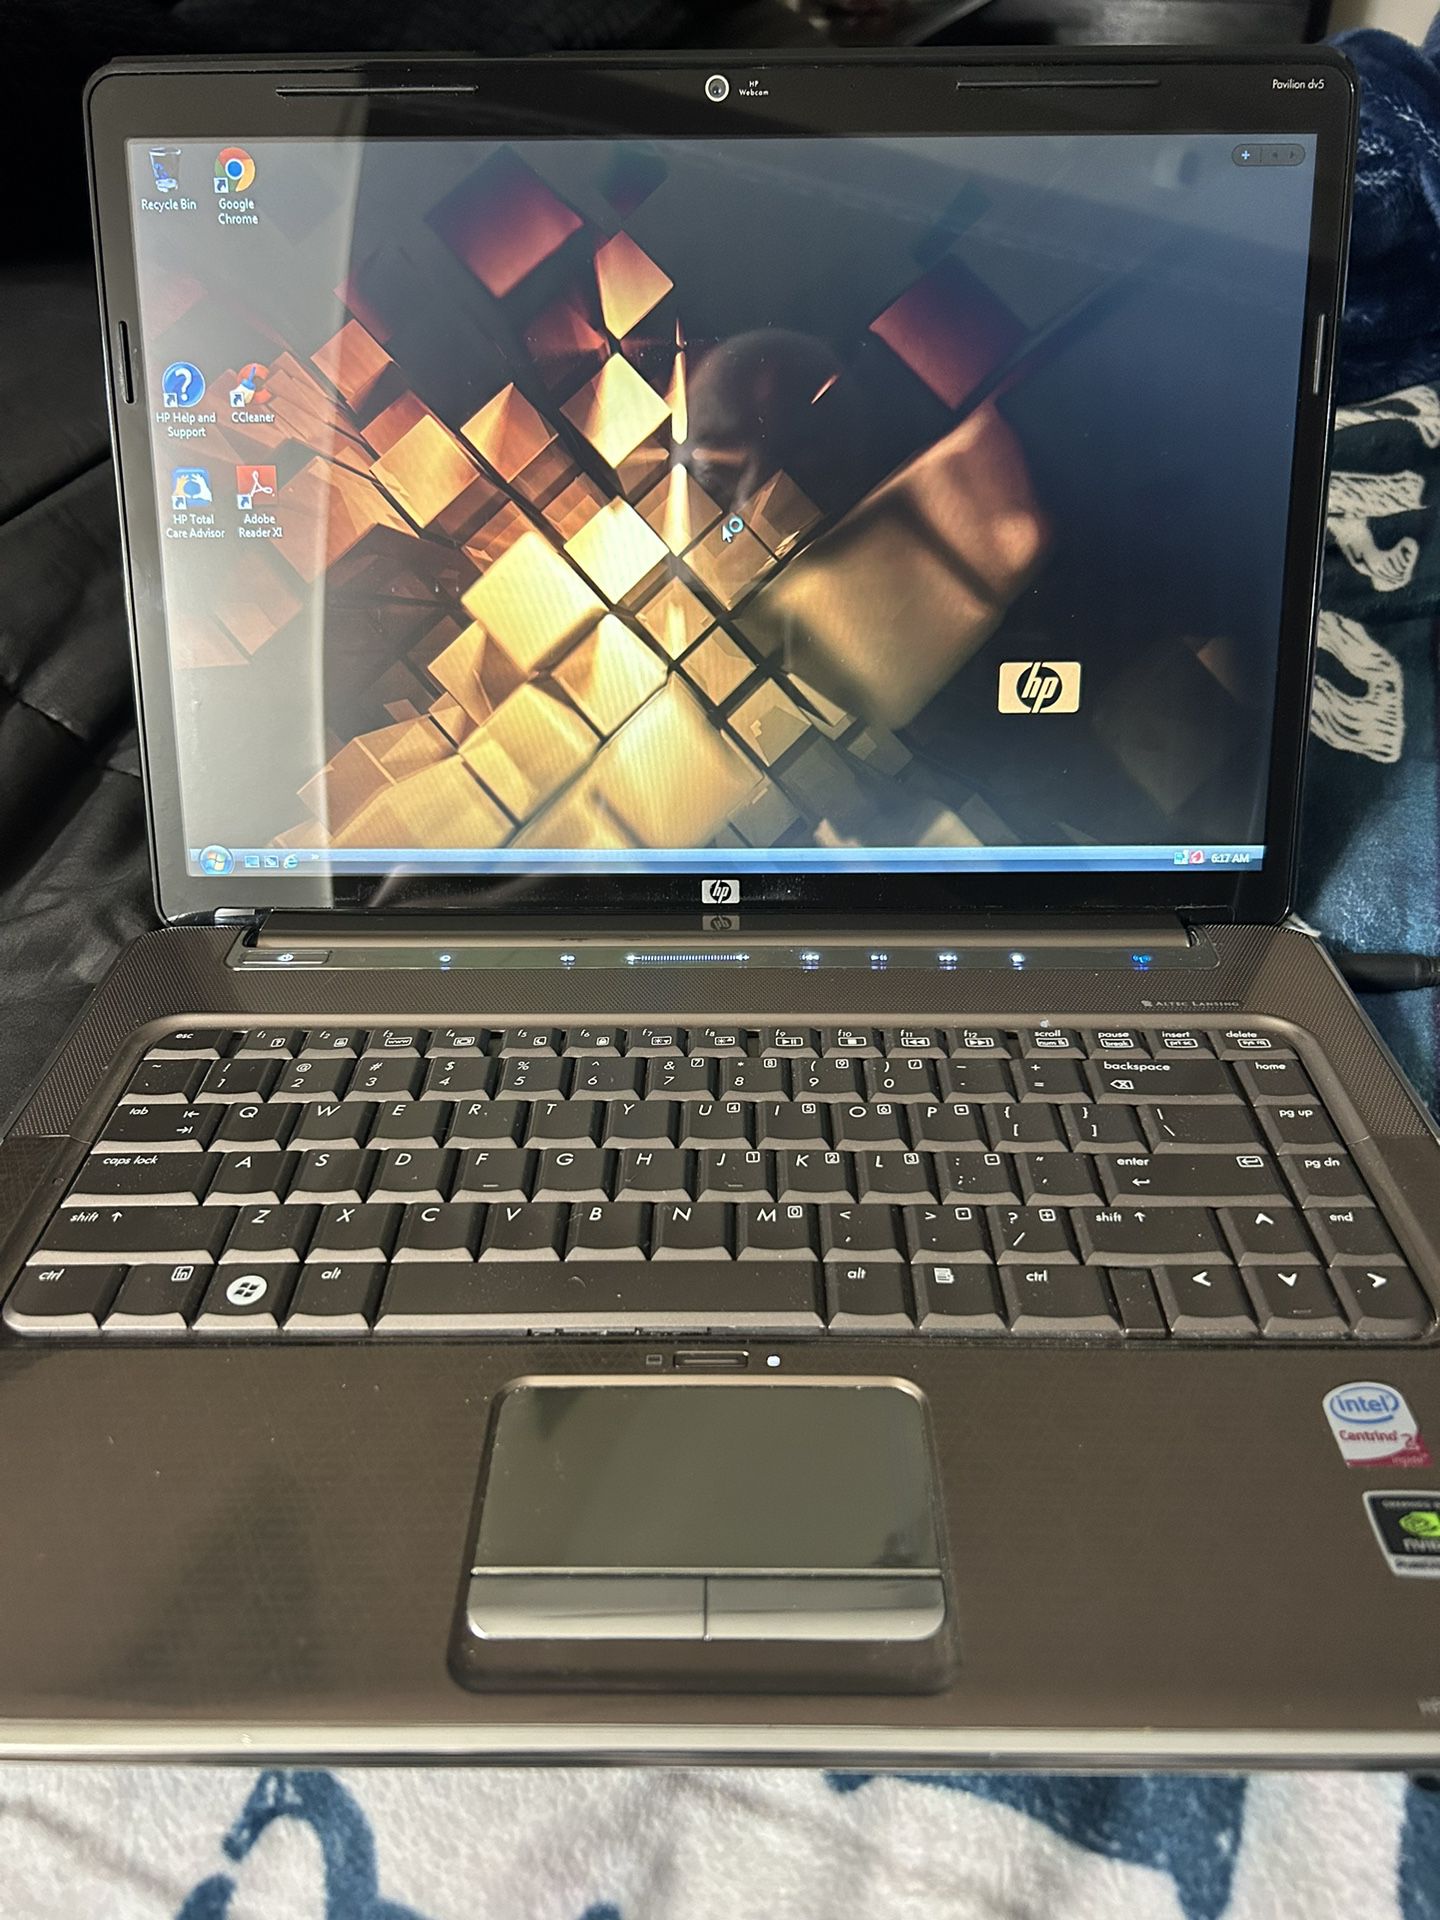 HP Pavilion Laptop (Old 2007 Model)